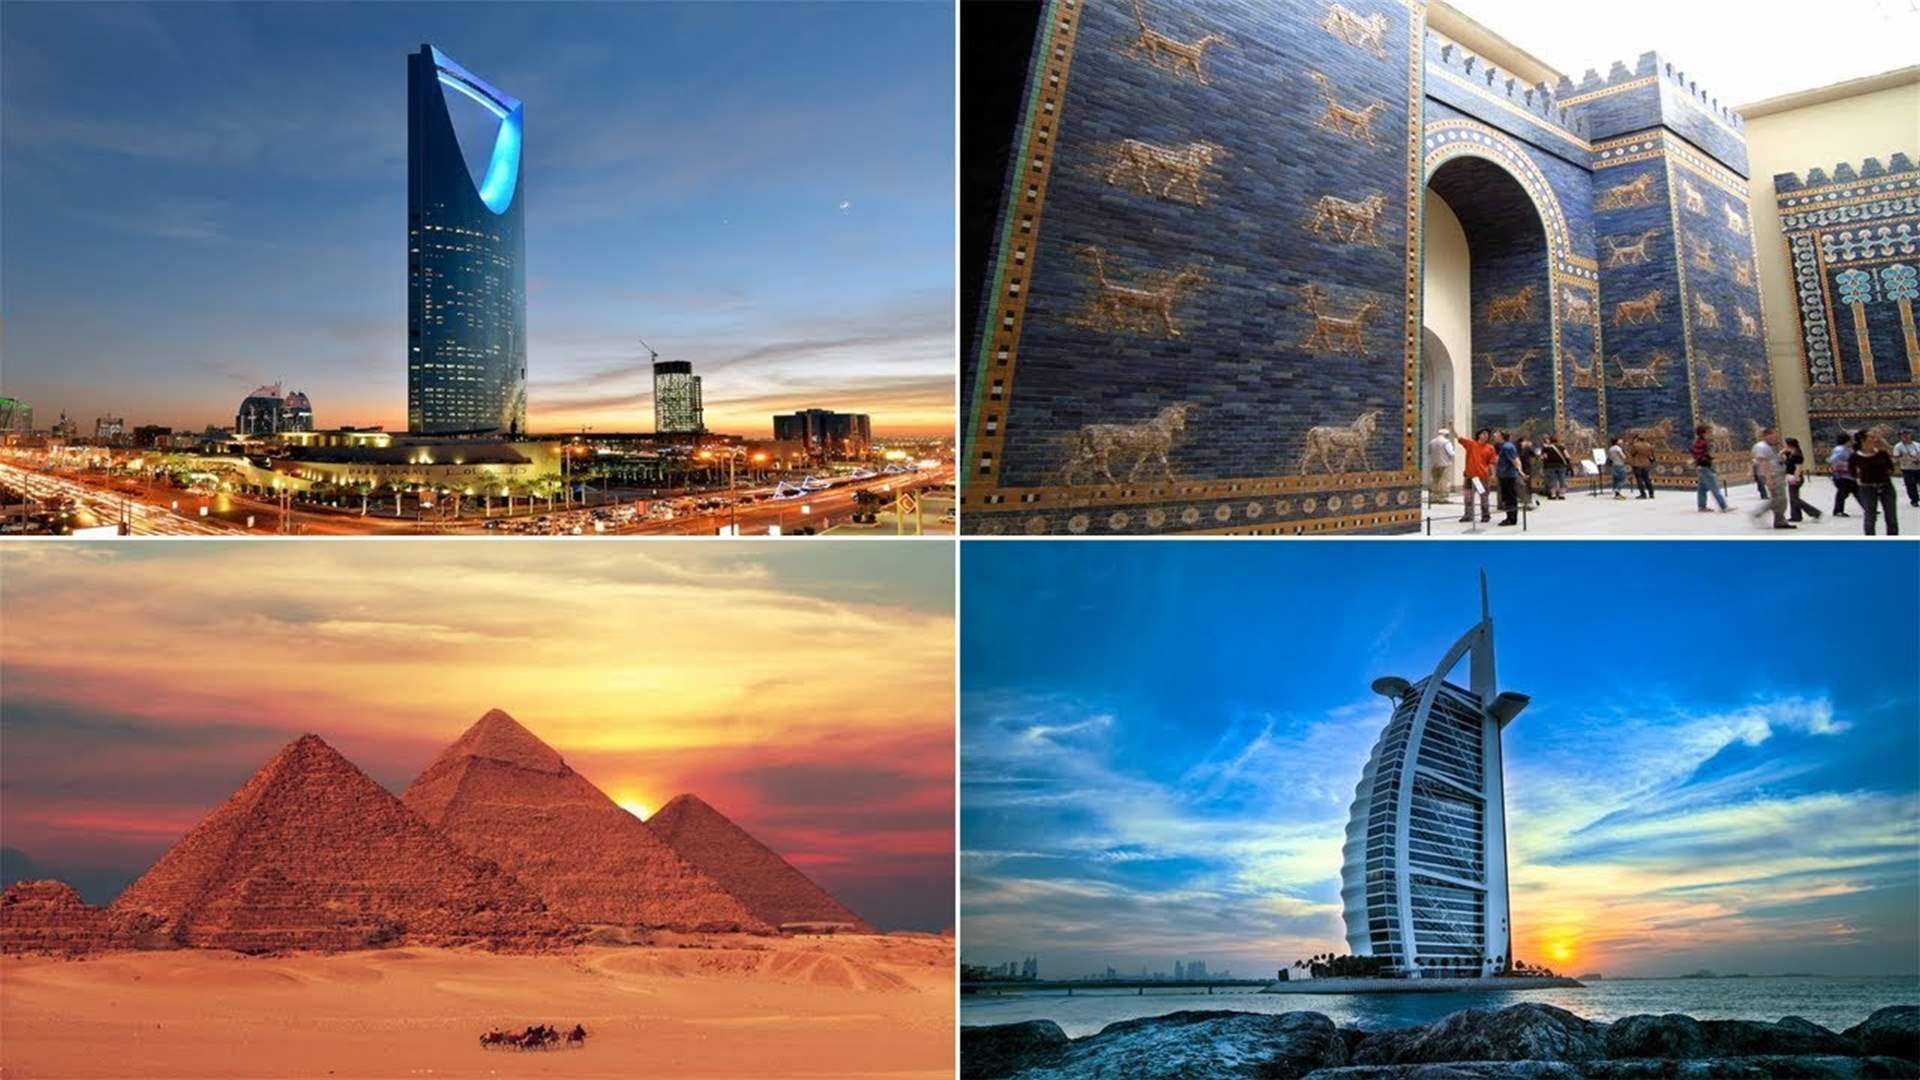 لمحبي السفر...اليكم أبرز المعالم السياحية في العالم العربي!